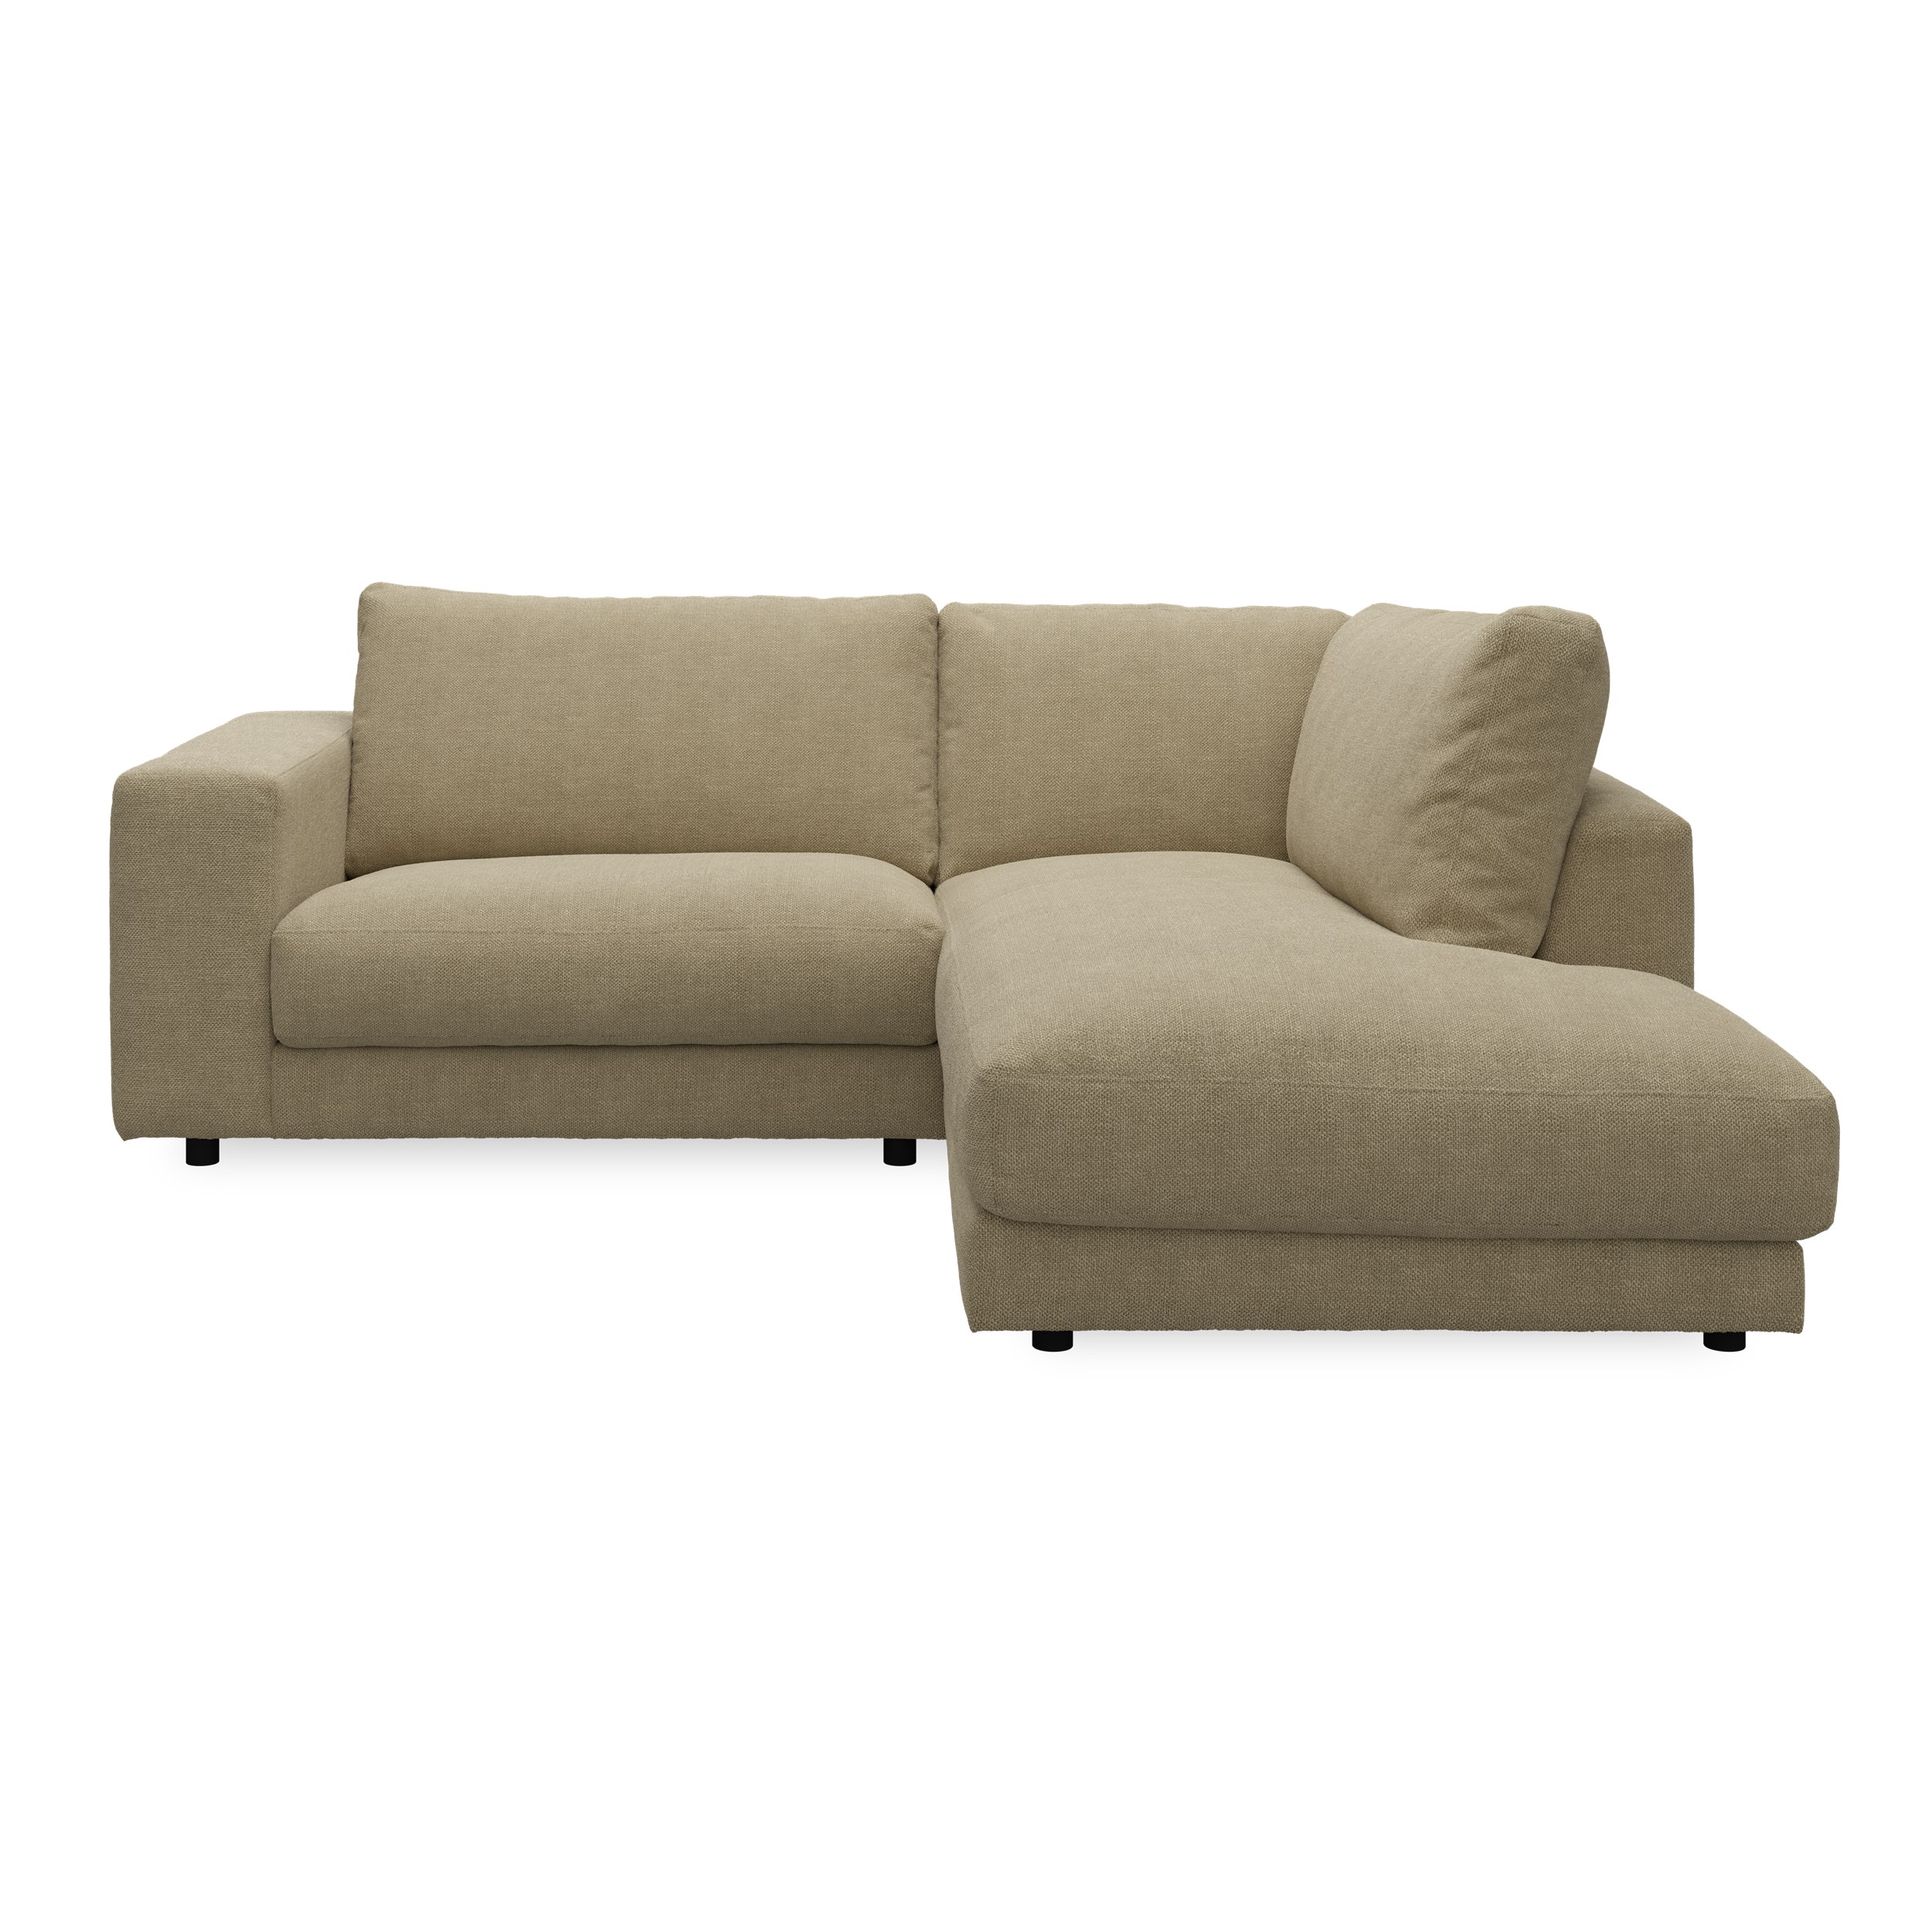 Bennent högervänd soffa med divan - Picasso Sand klädsel, ben i svart plast och S:skum/fib/din/sili R:Dun/skum